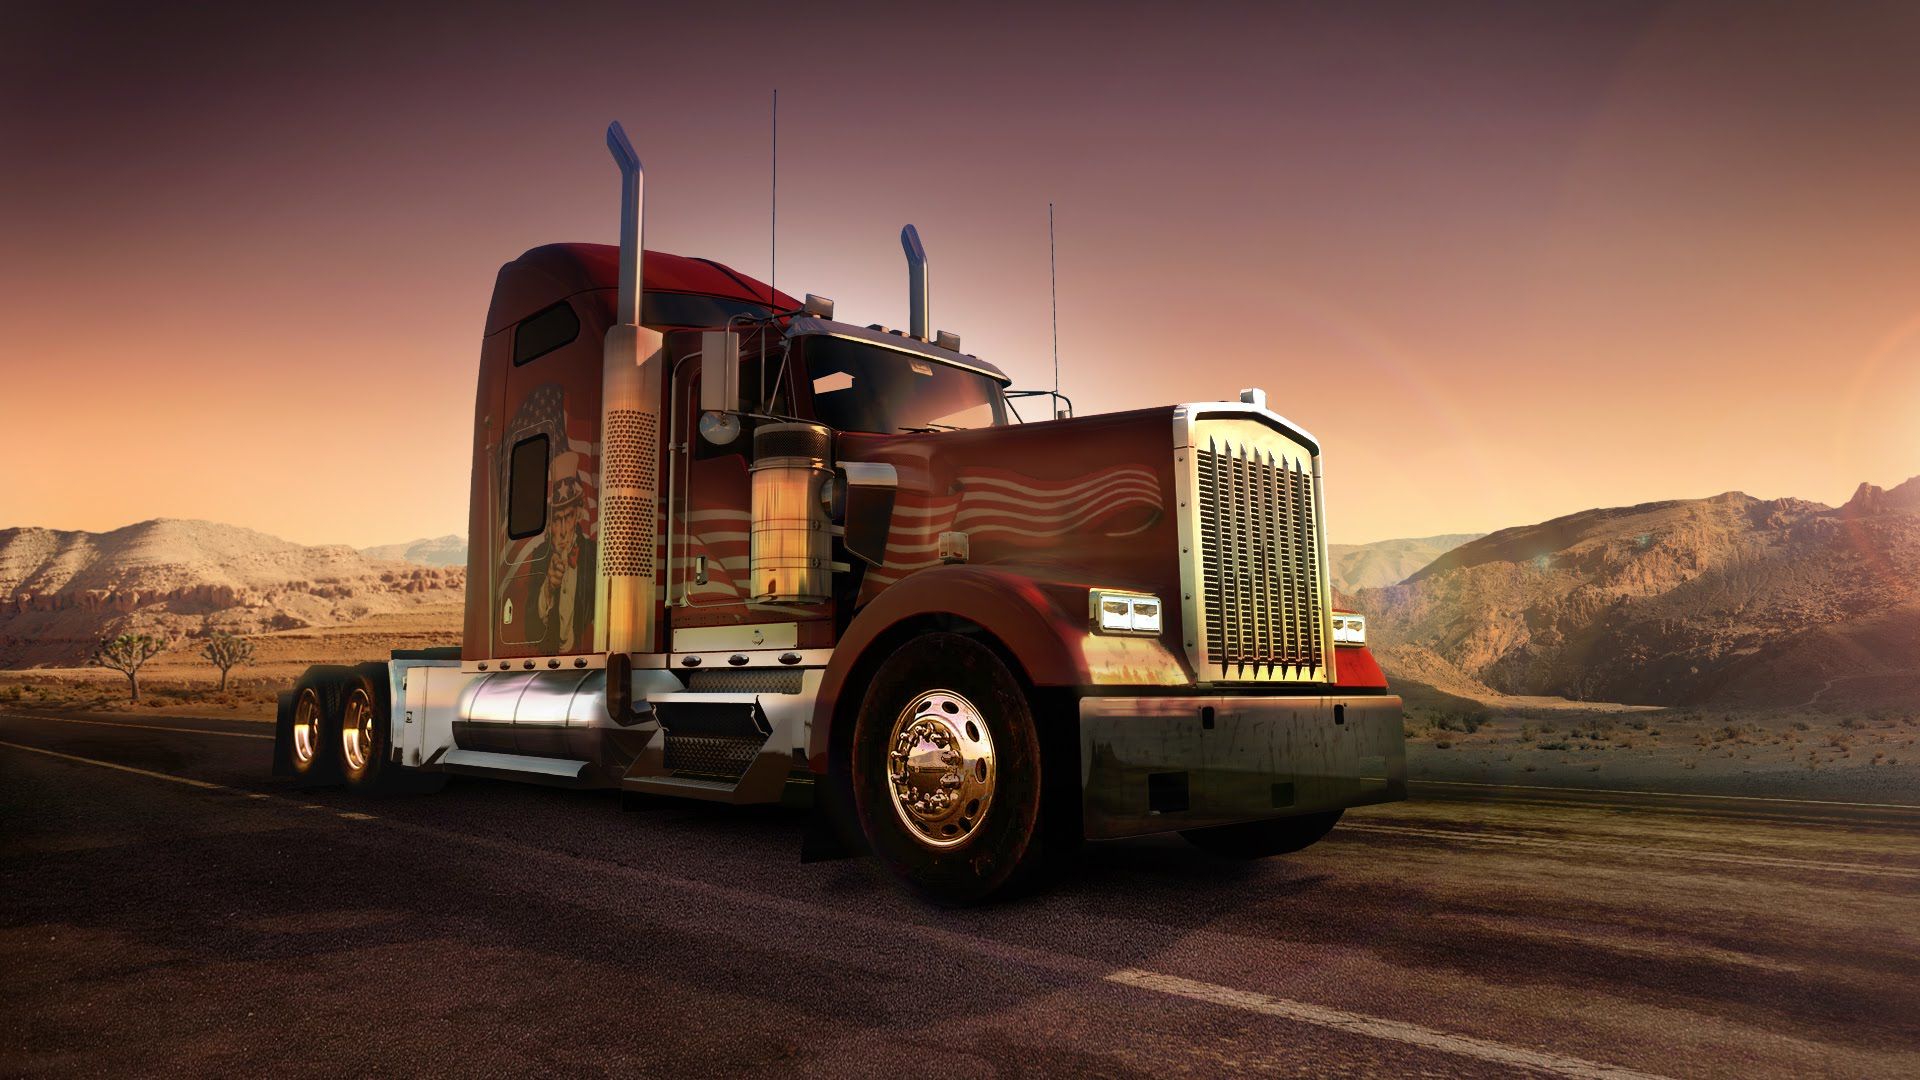 Truck Wallpapers - Top 35 Best Truck Wallpapers Download